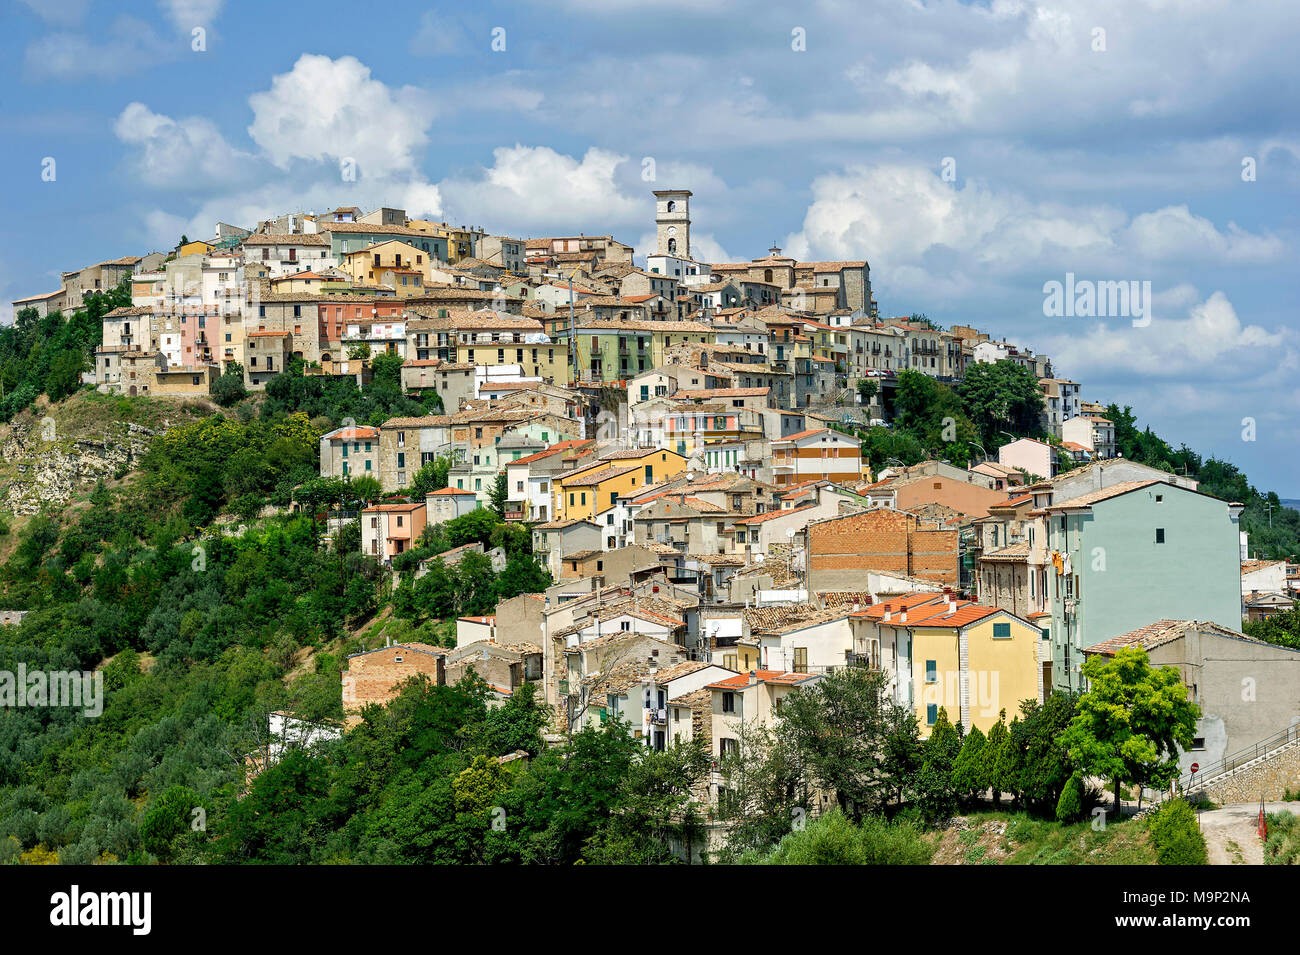 Blick auf die Altstadt auf einem grünen Hügel, Trivento, Molise, Italien Stockfoto